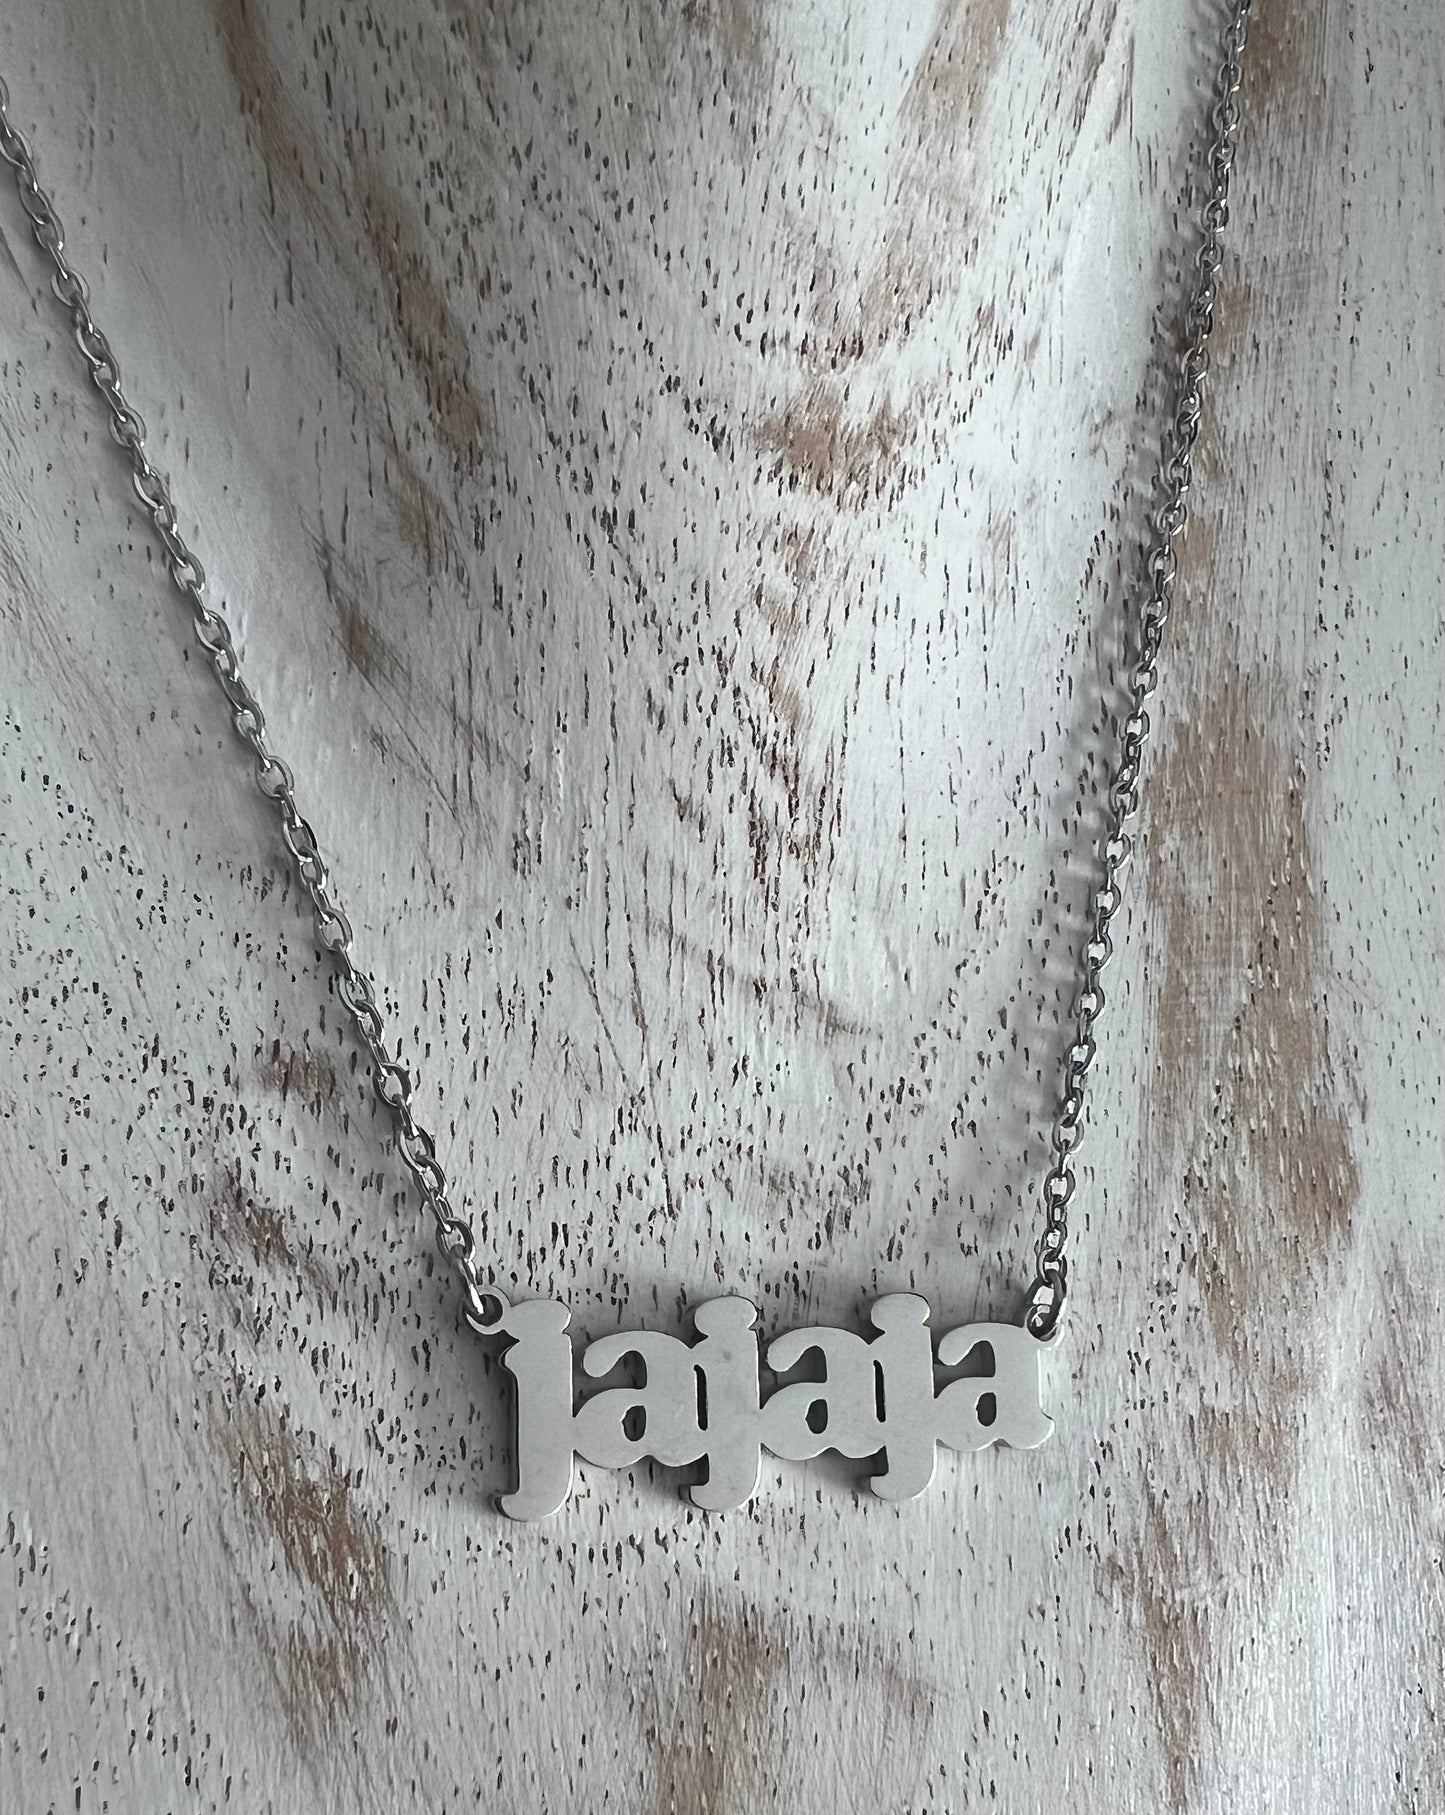 JaJaJa necklace